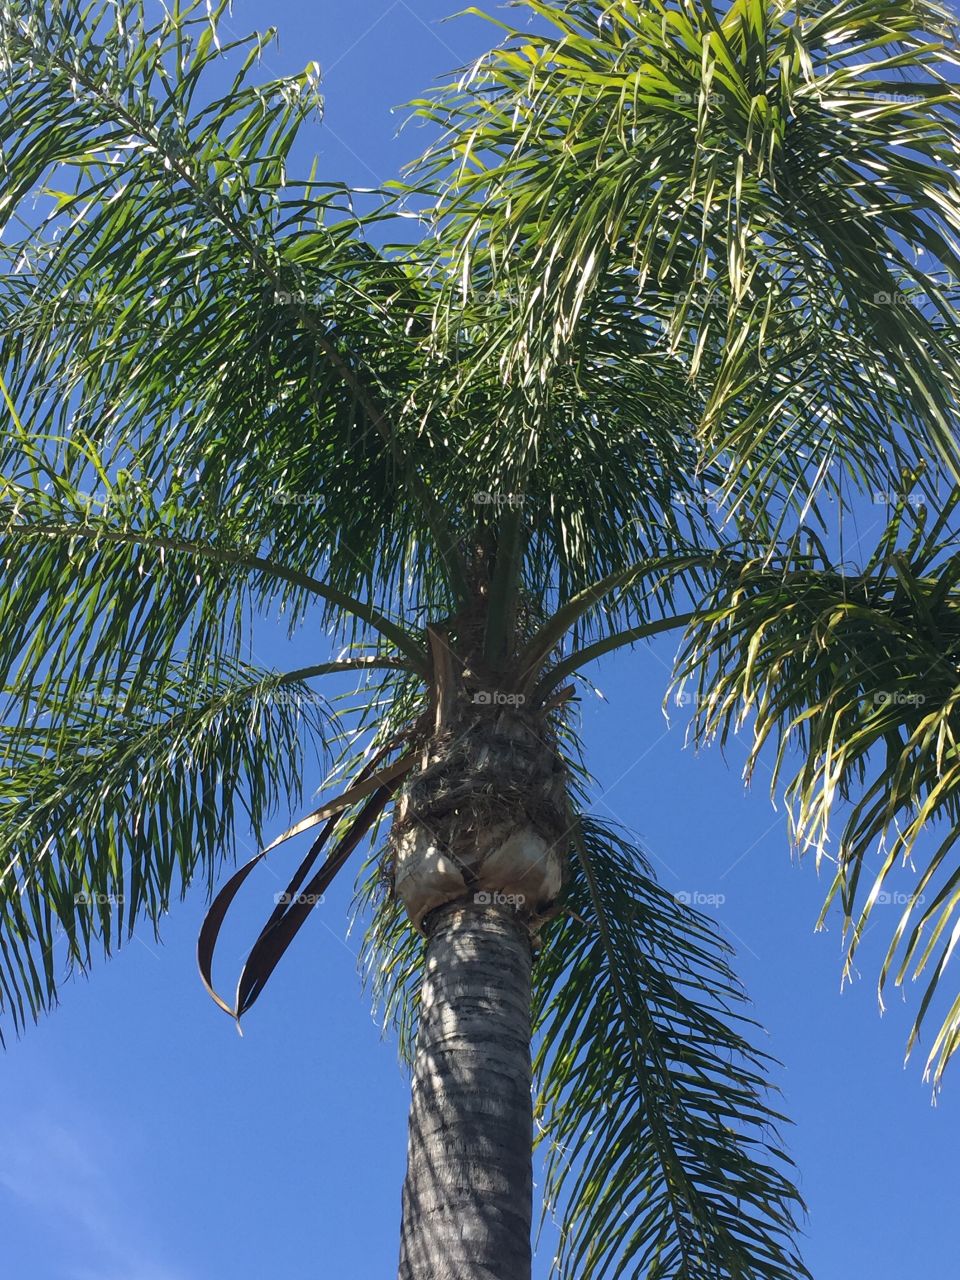 Palm tree 